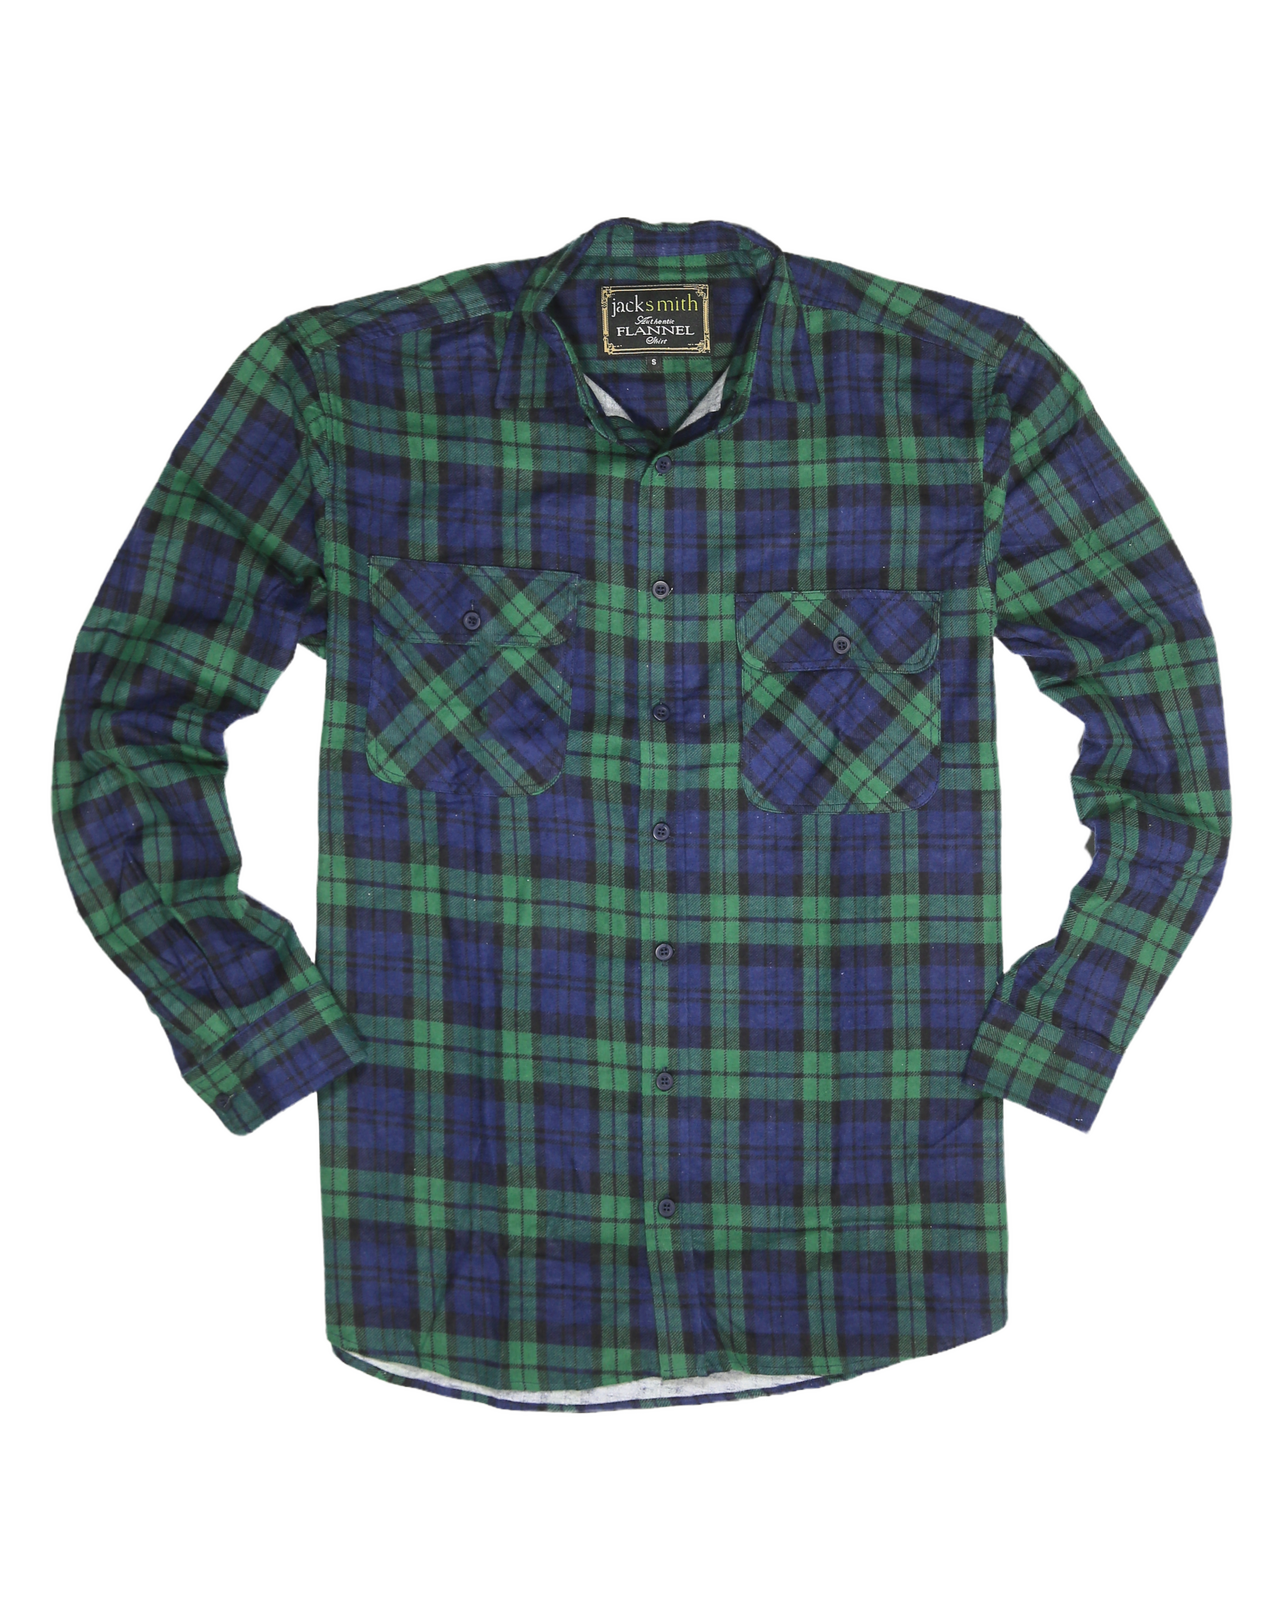 Men's Flannelette Long Sleeve Shirt 100% Cotton Check Authentic Flannel